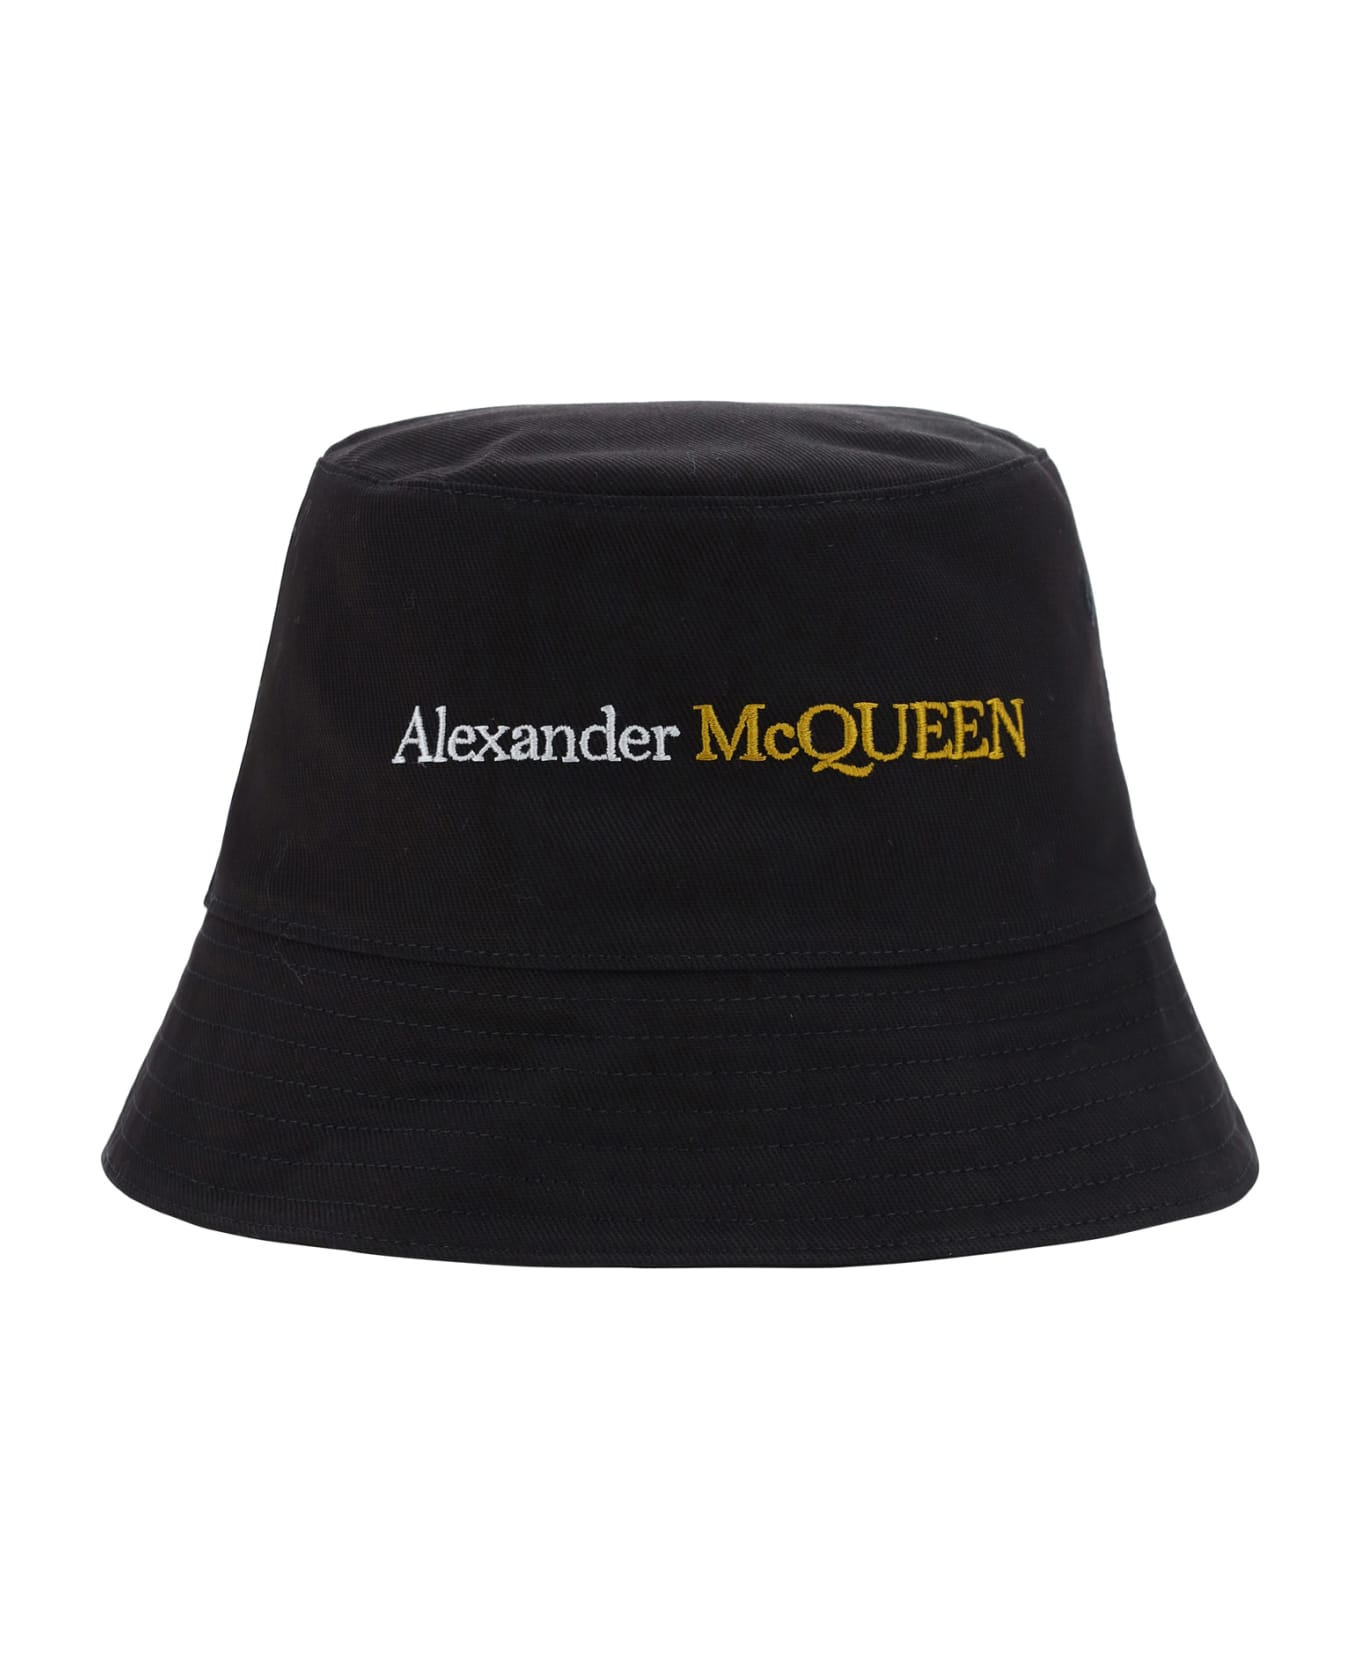 Alexander McQueen Bucket Hat With Logo - Black/gold